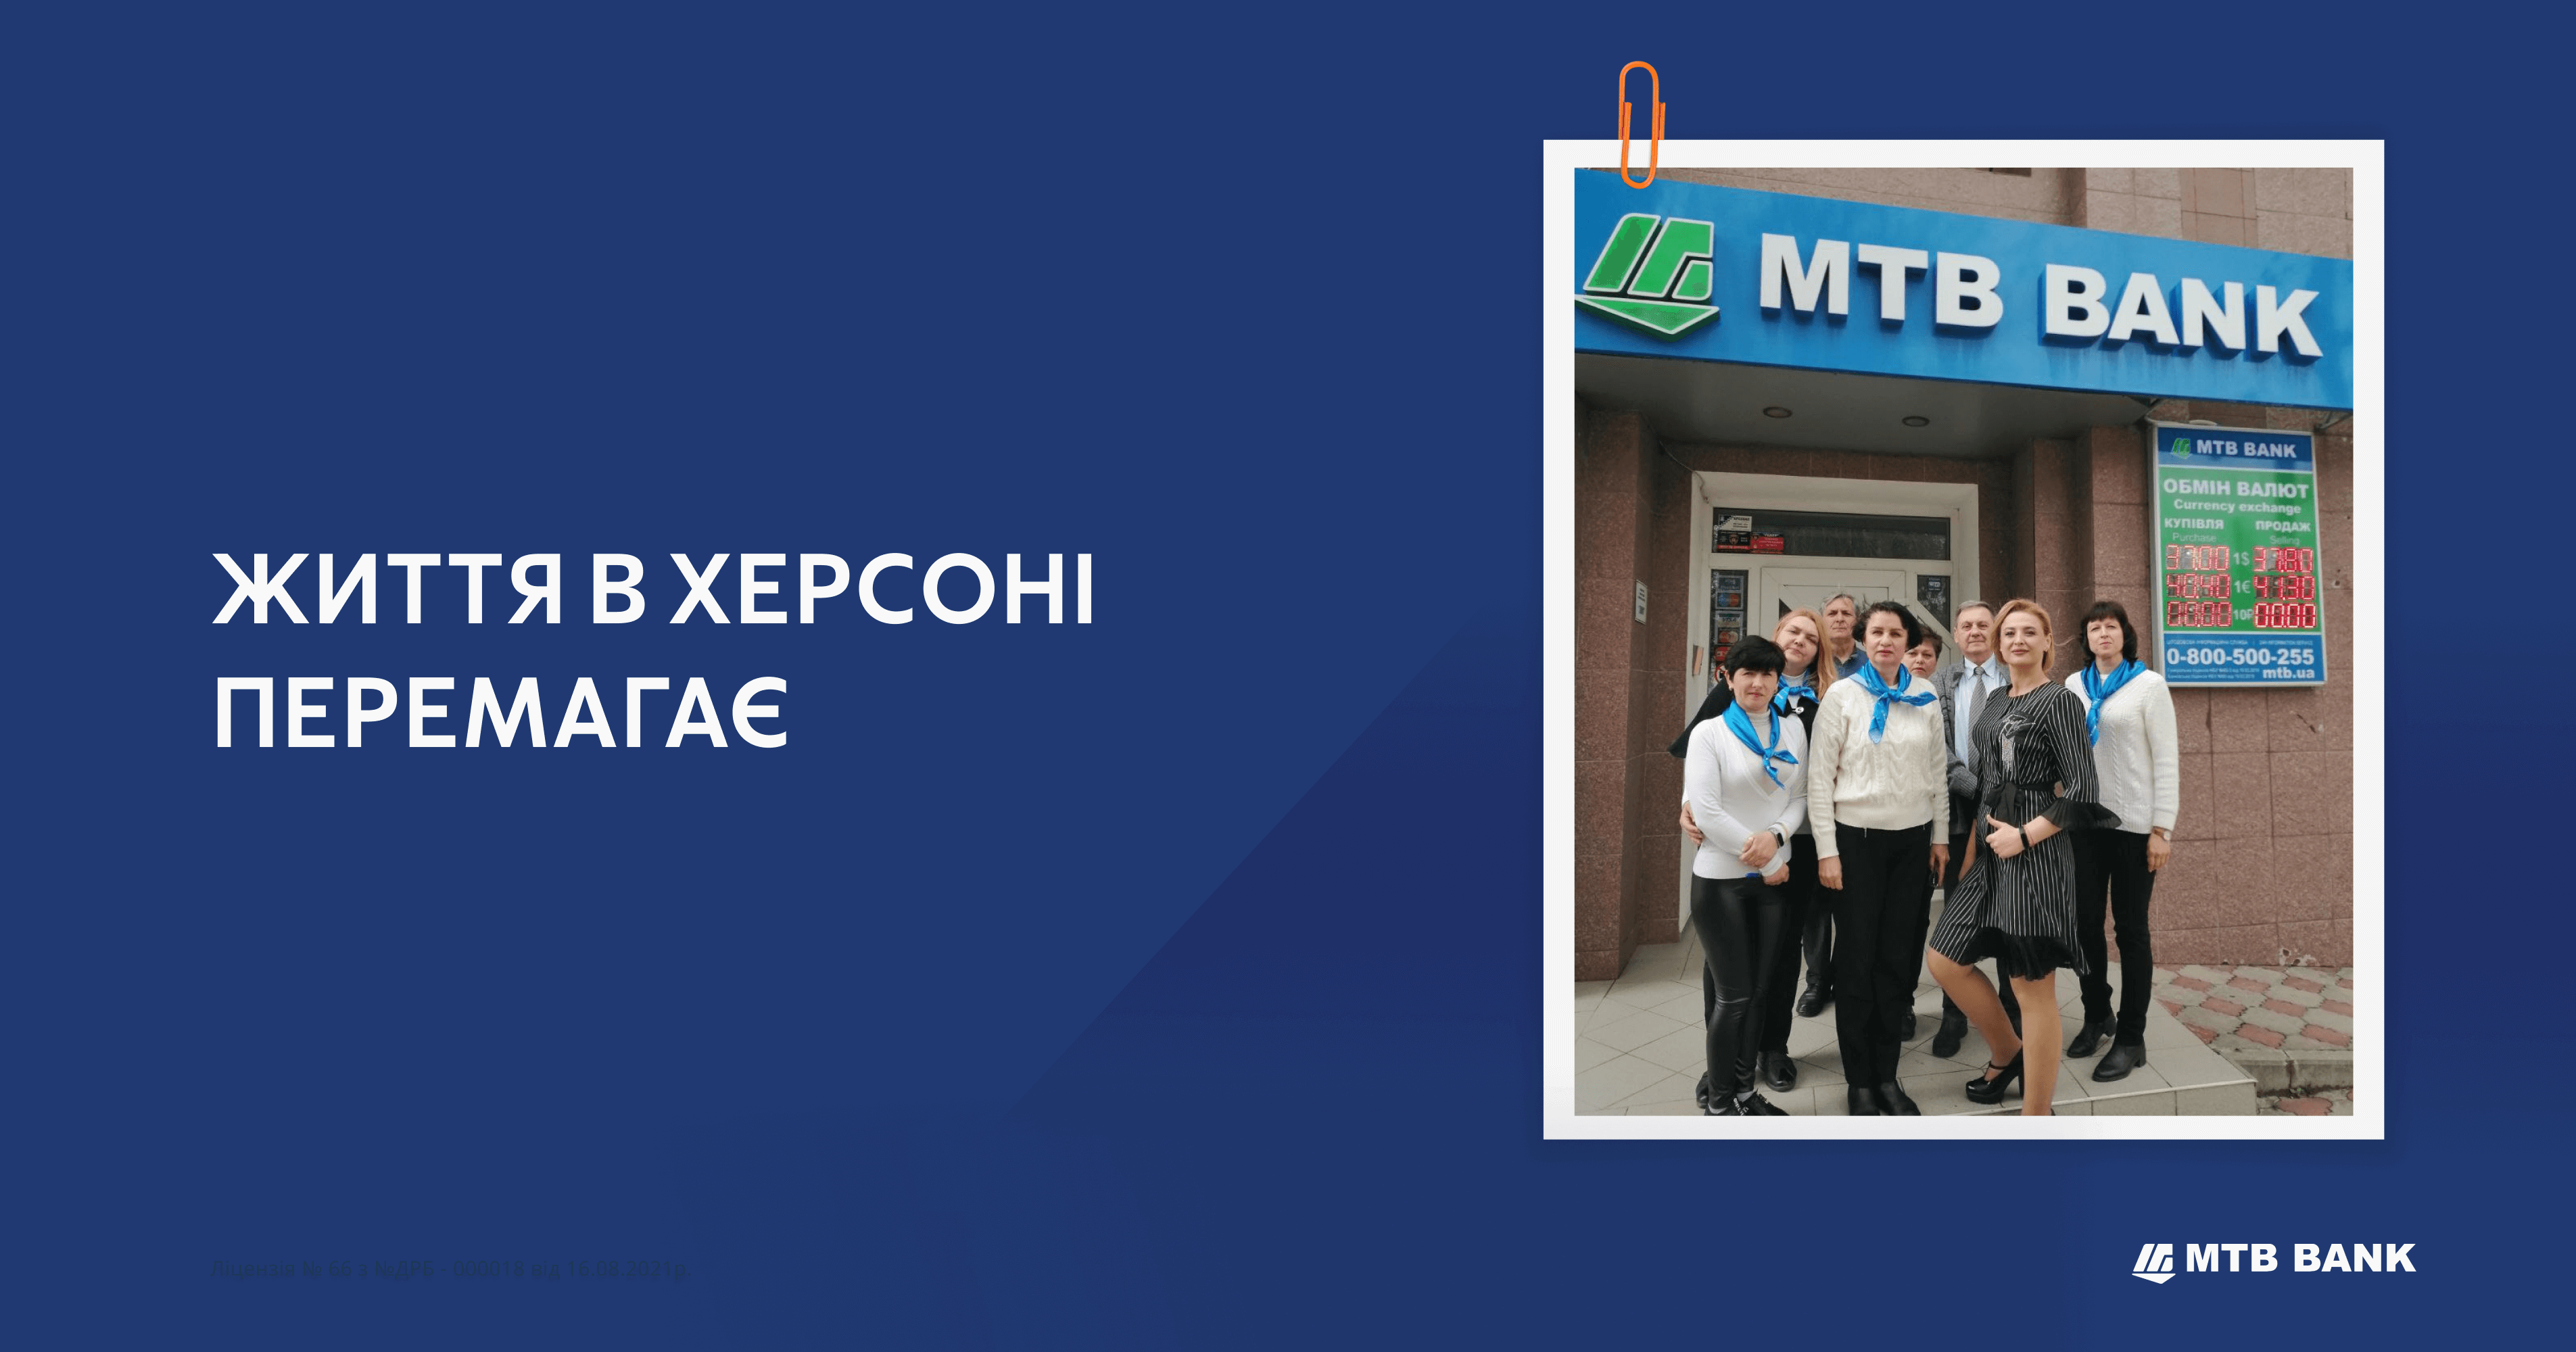 Херсонське відділення МТБ Банку щомісяця подвоює обсяг клієнтських операцій - фото - mtb.ua